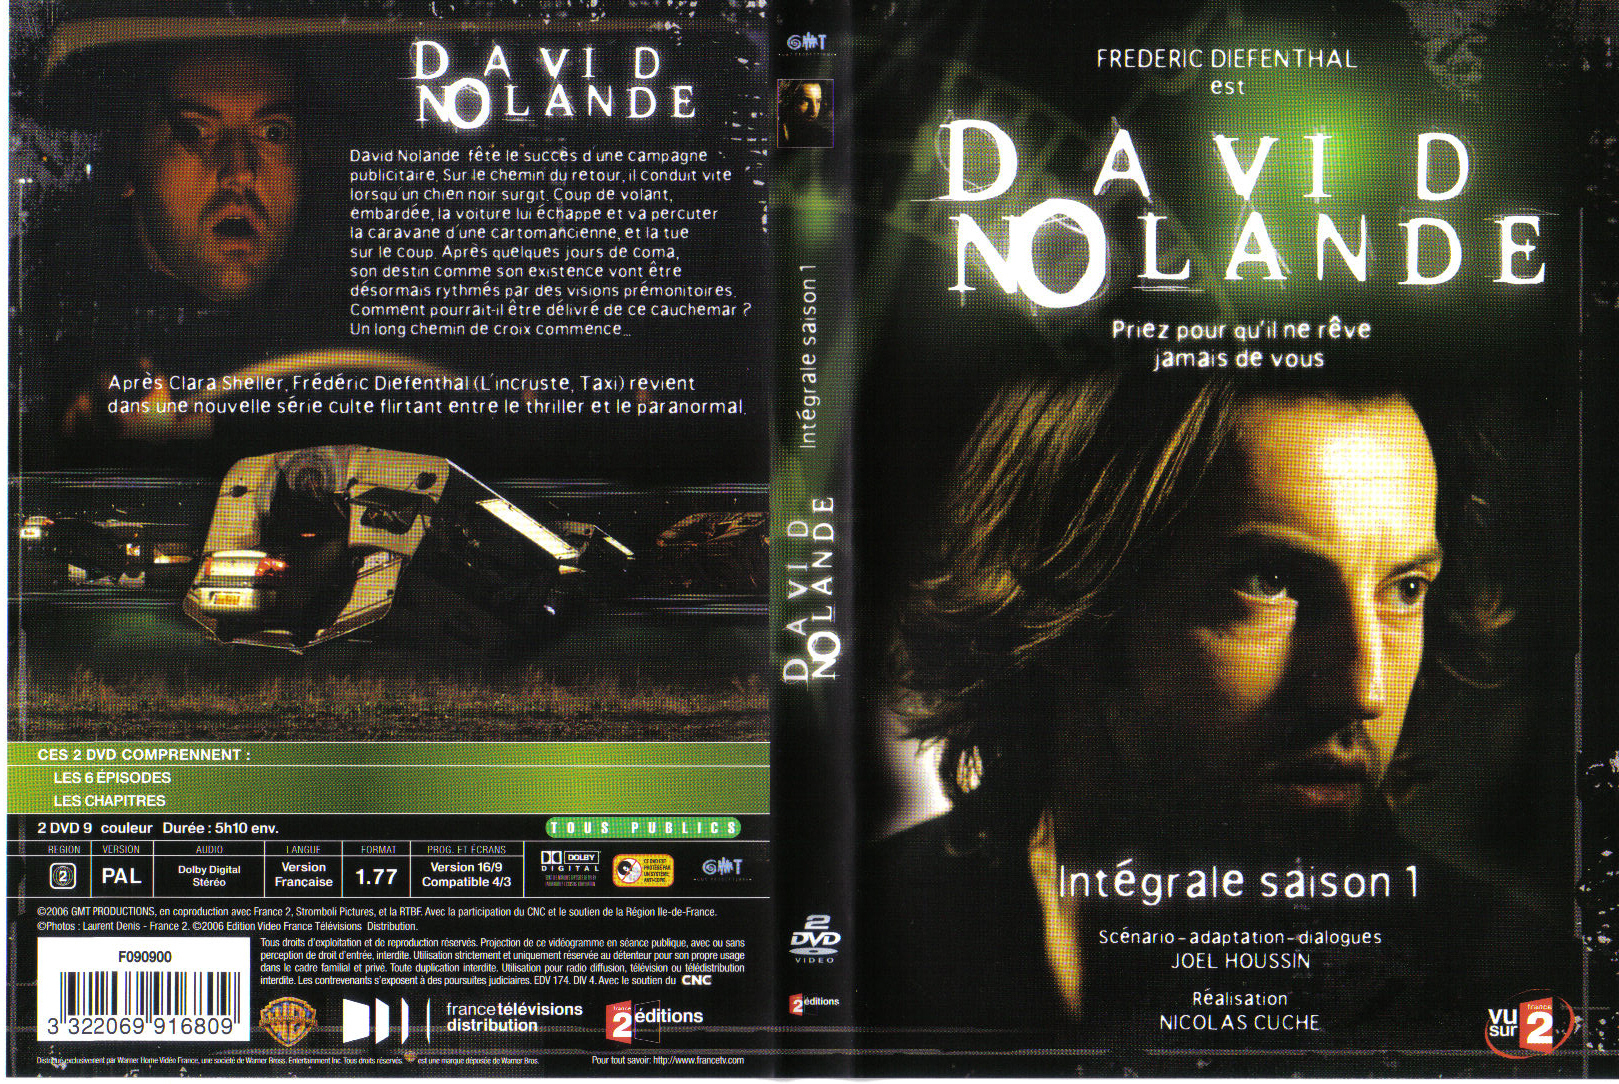 Jaquette DVD David Nolande